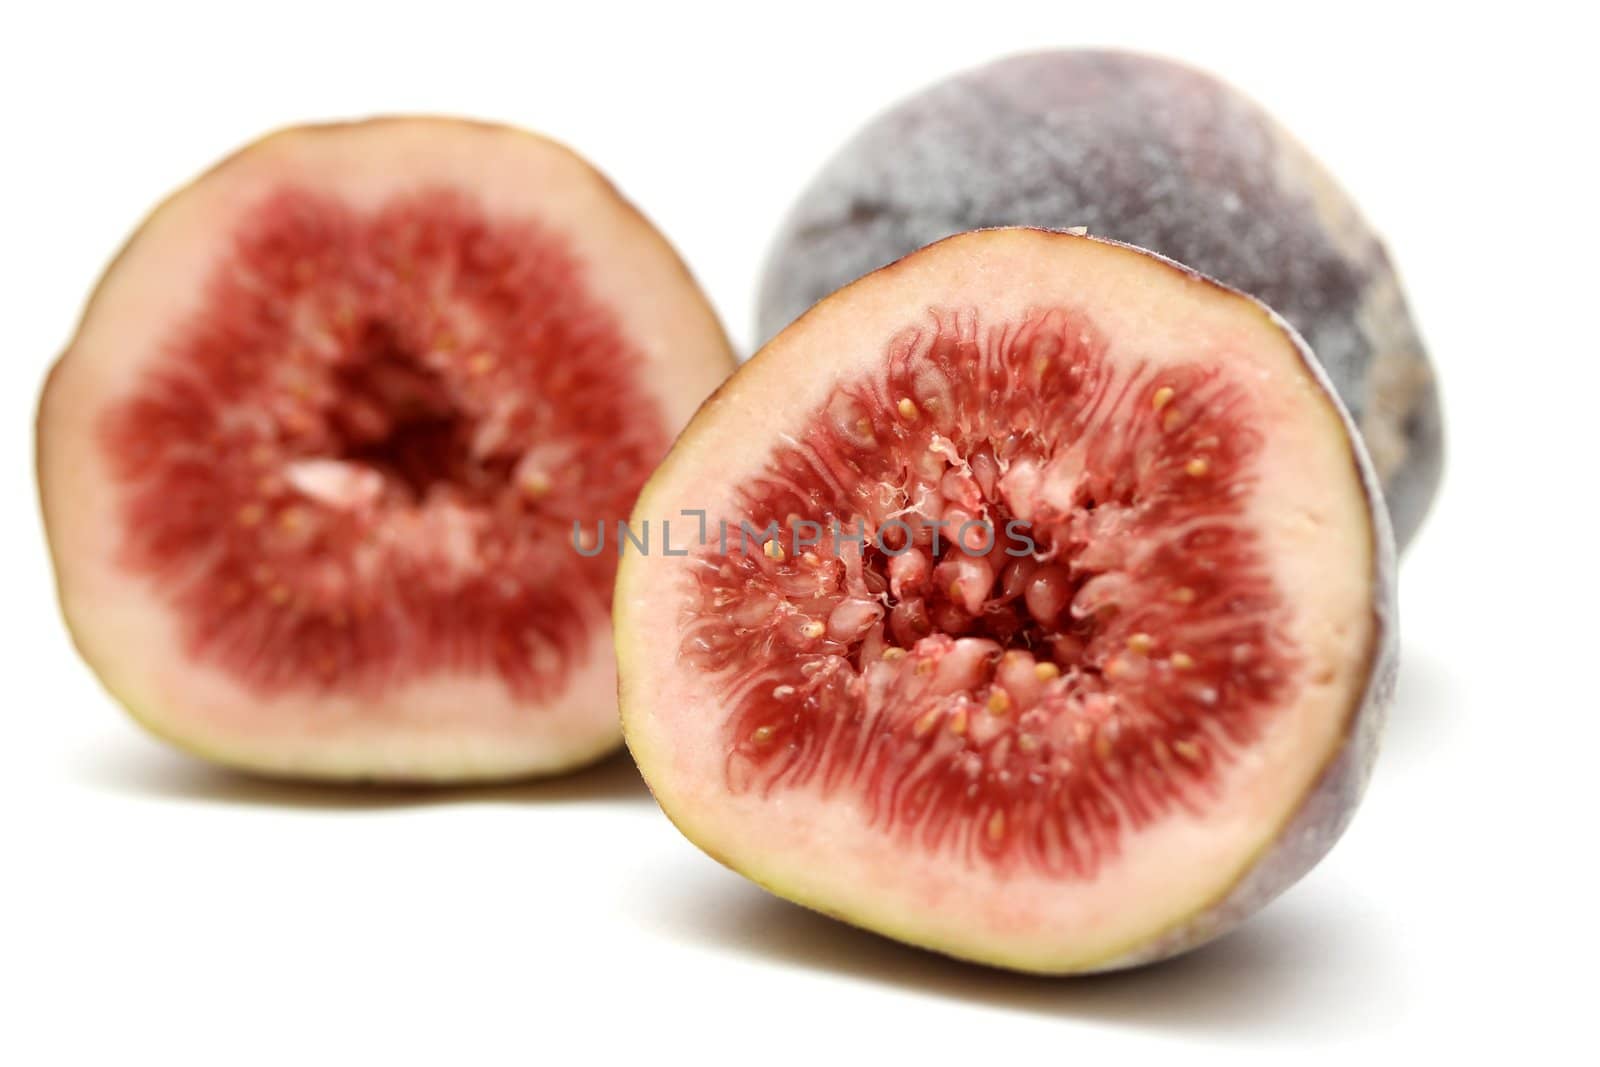 fig fruits by Teka77